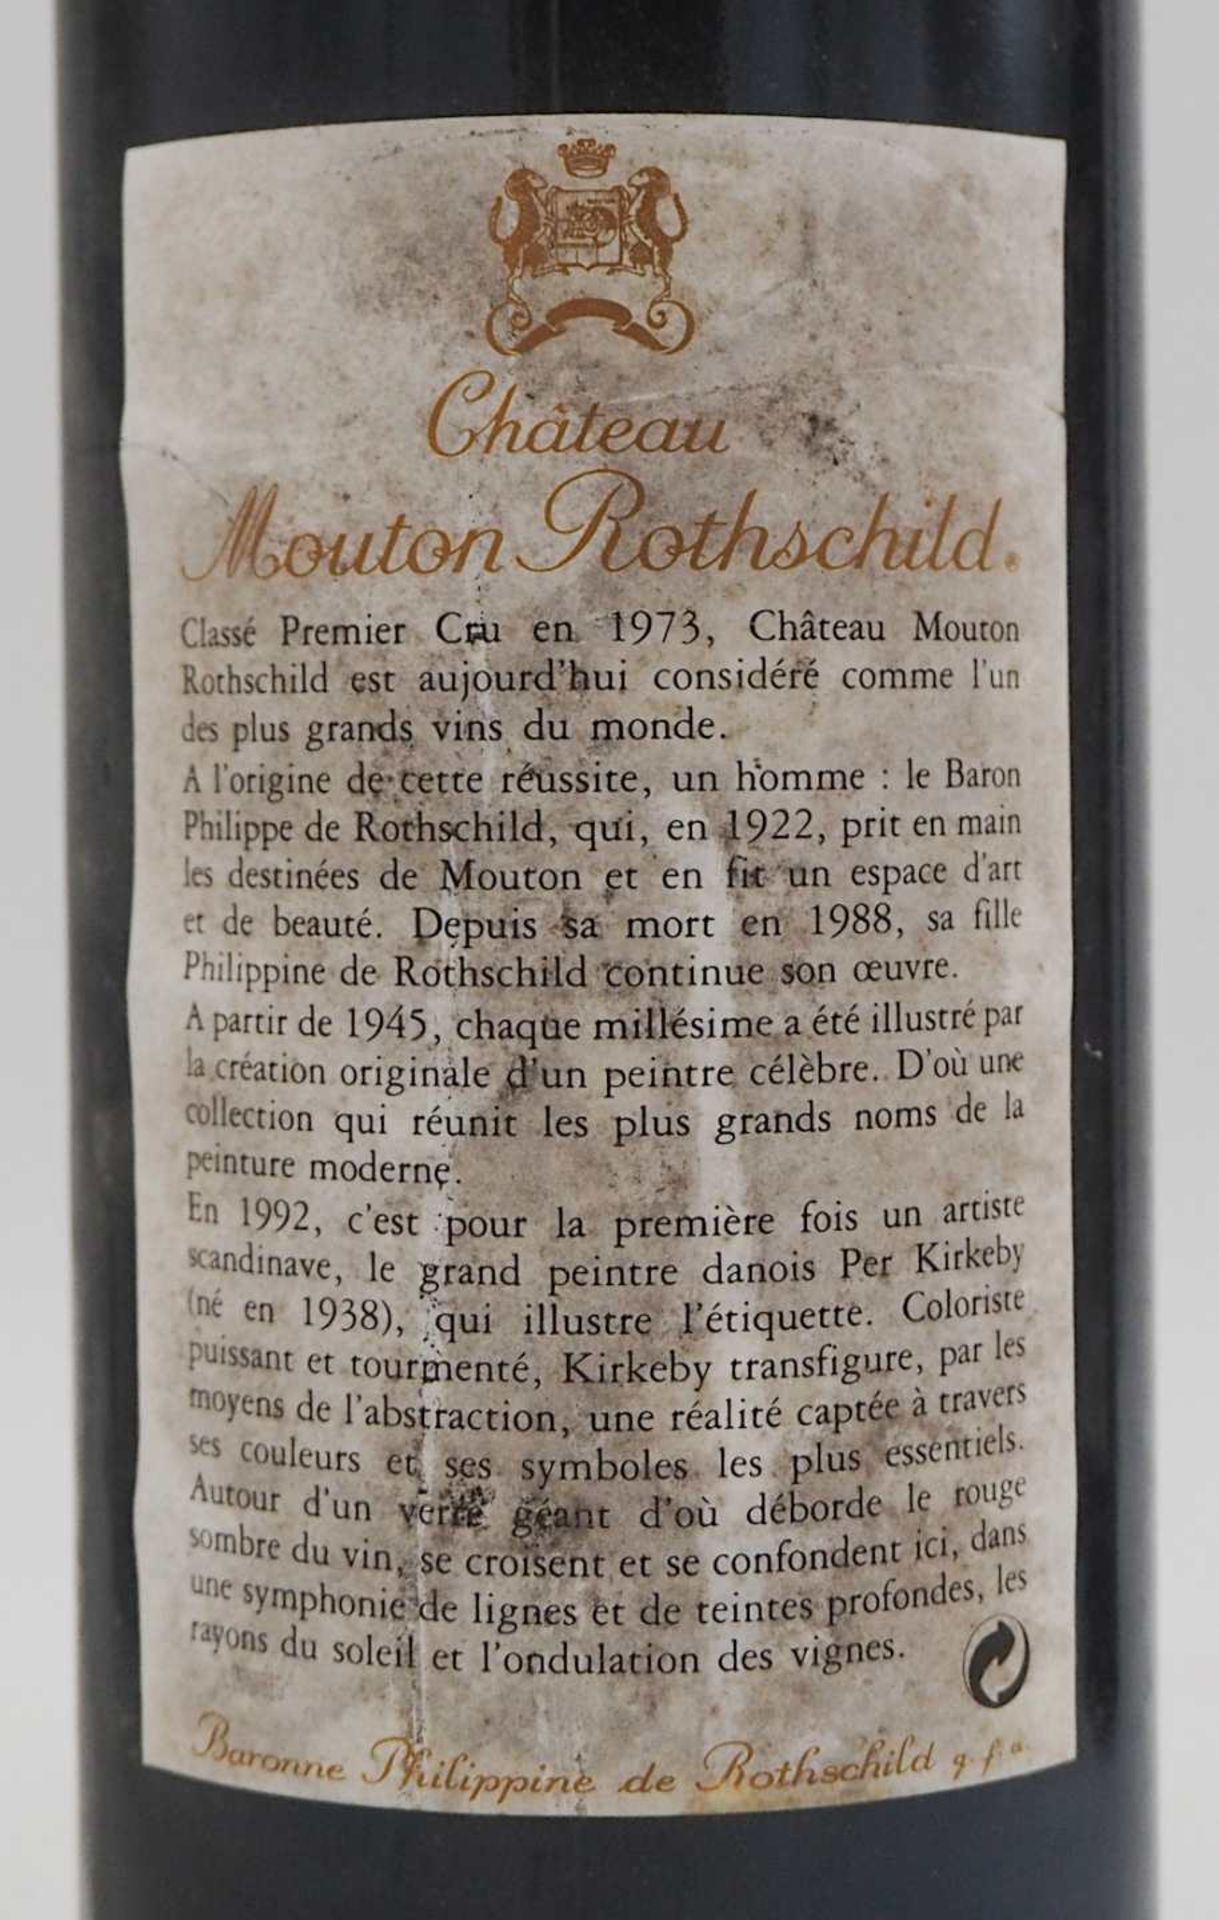 3 Flaschen Chateau Mouton Rothschild Pauillac Baronne Philippine de Rothschild 1992 Et - Bild 3 aus 4